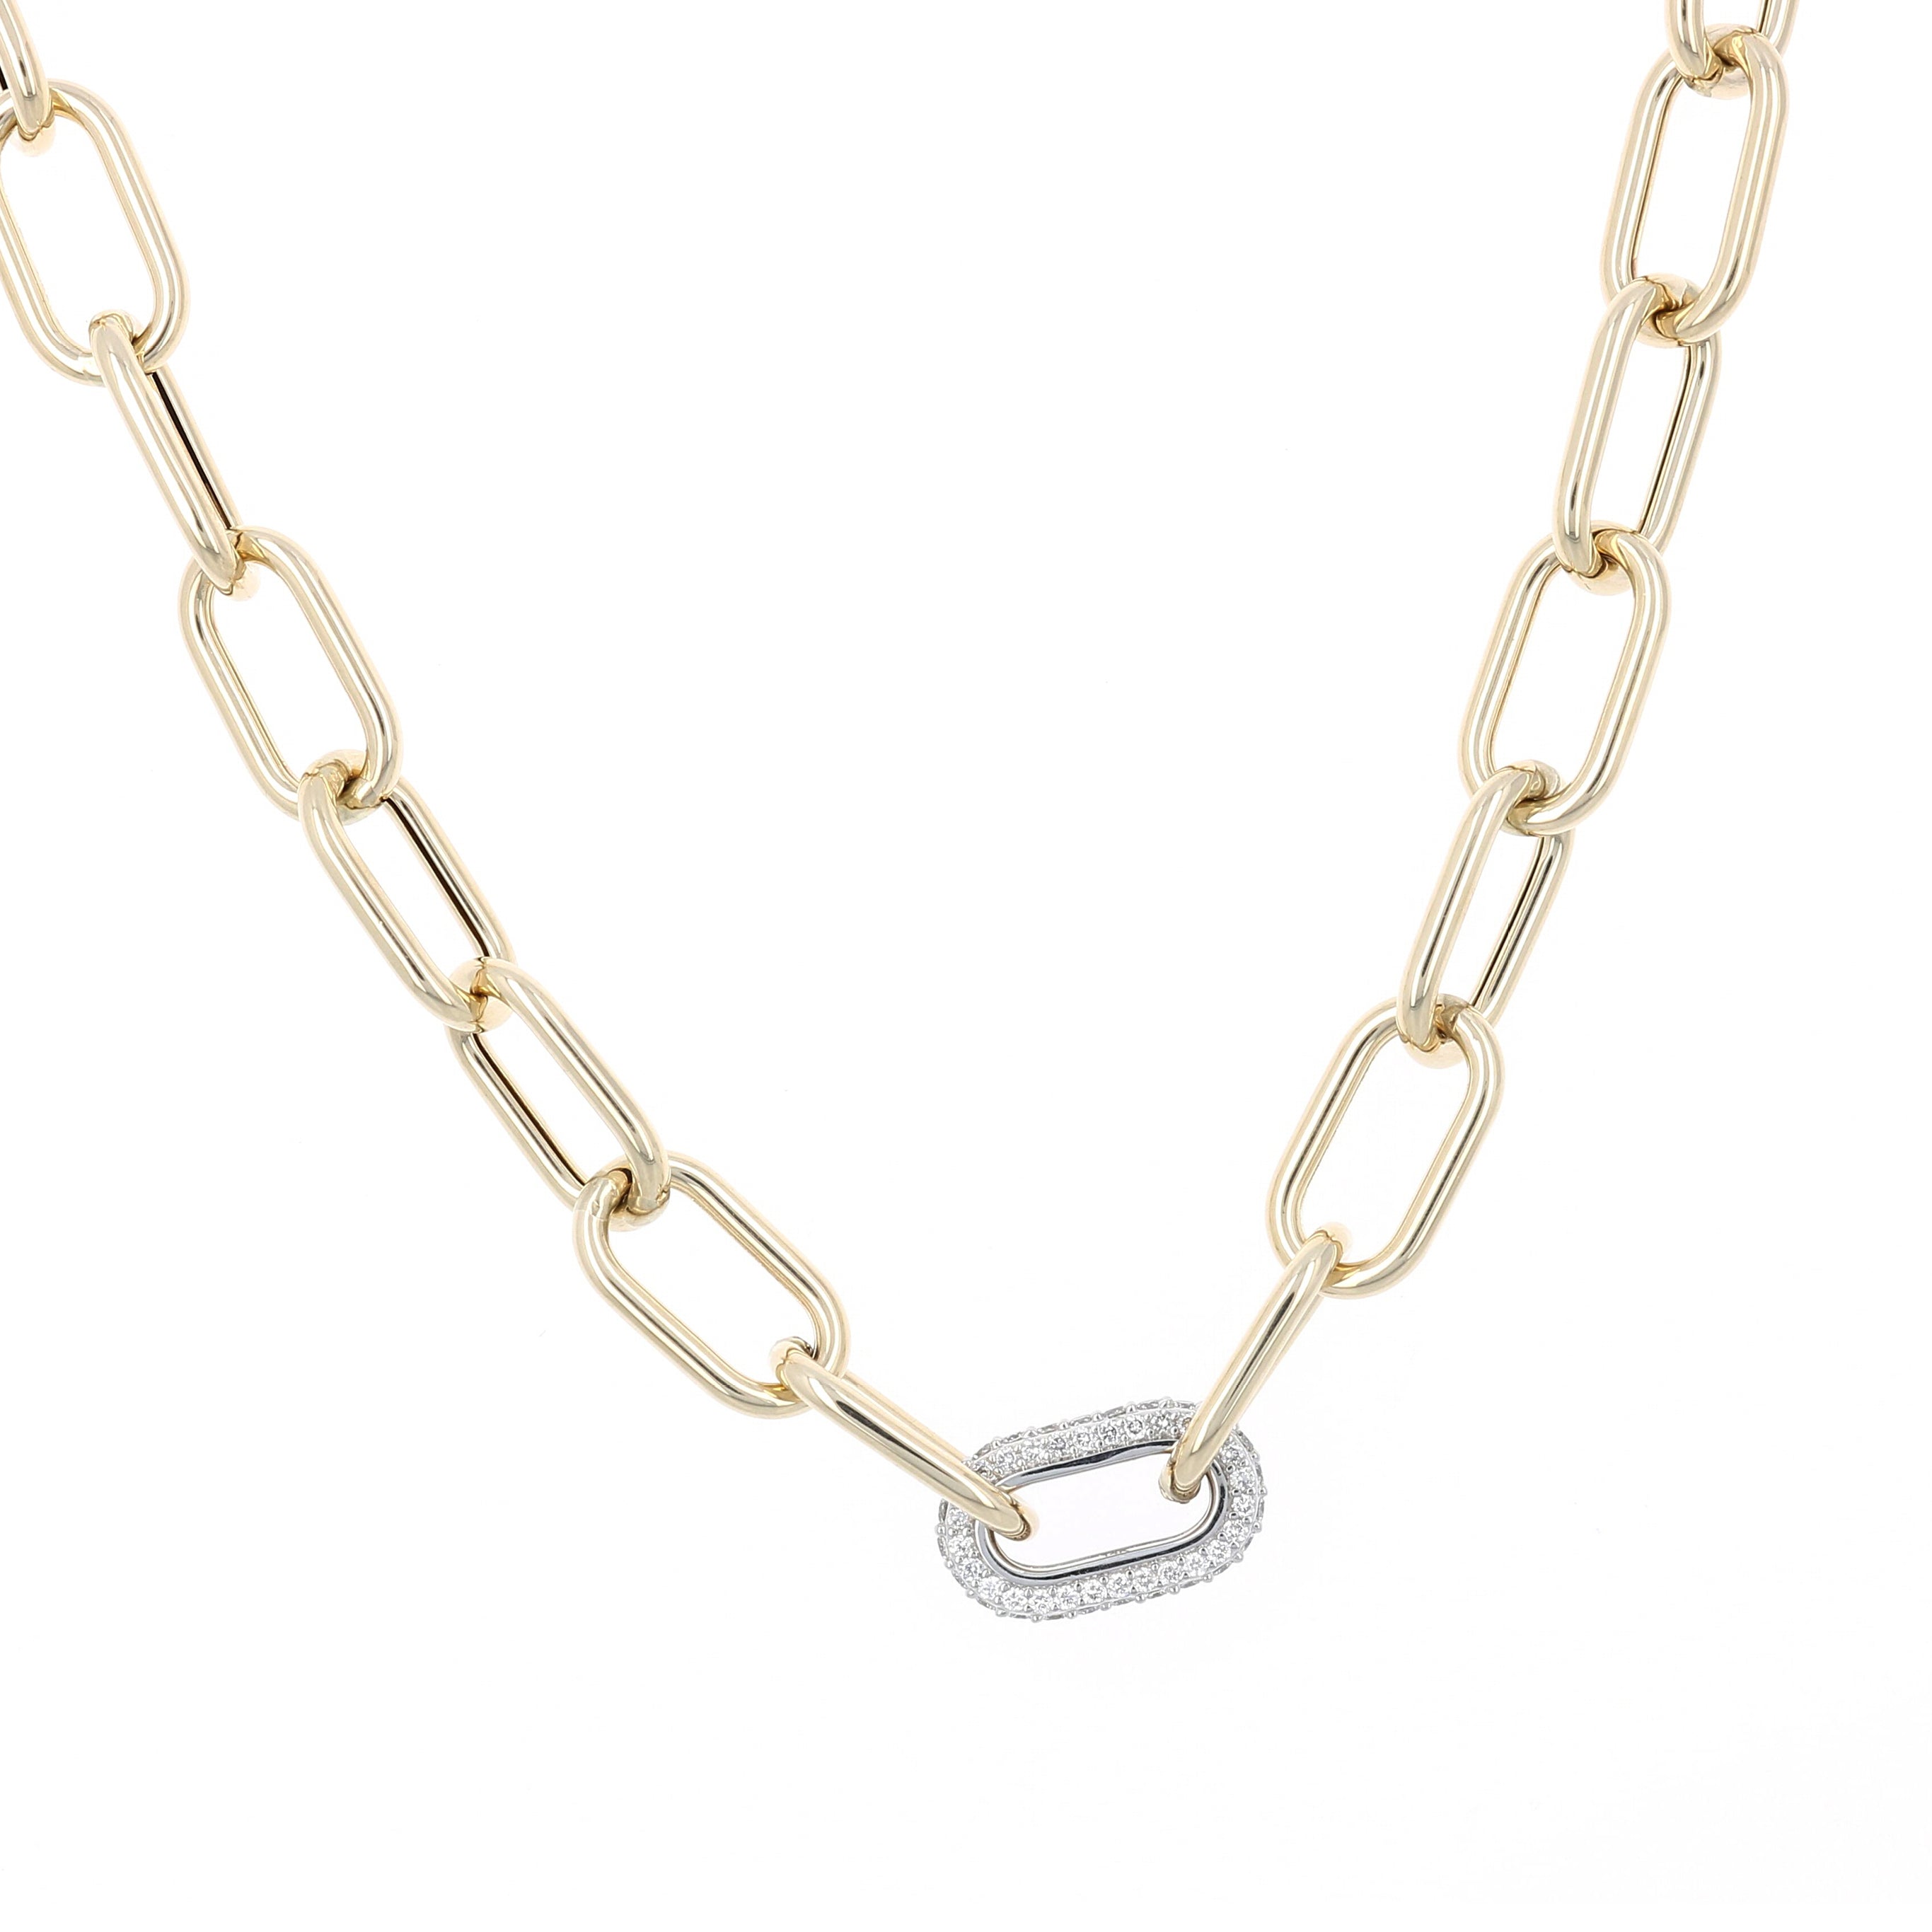 Shop Necklaces: Chains, Stackabbles, Pendants, & More